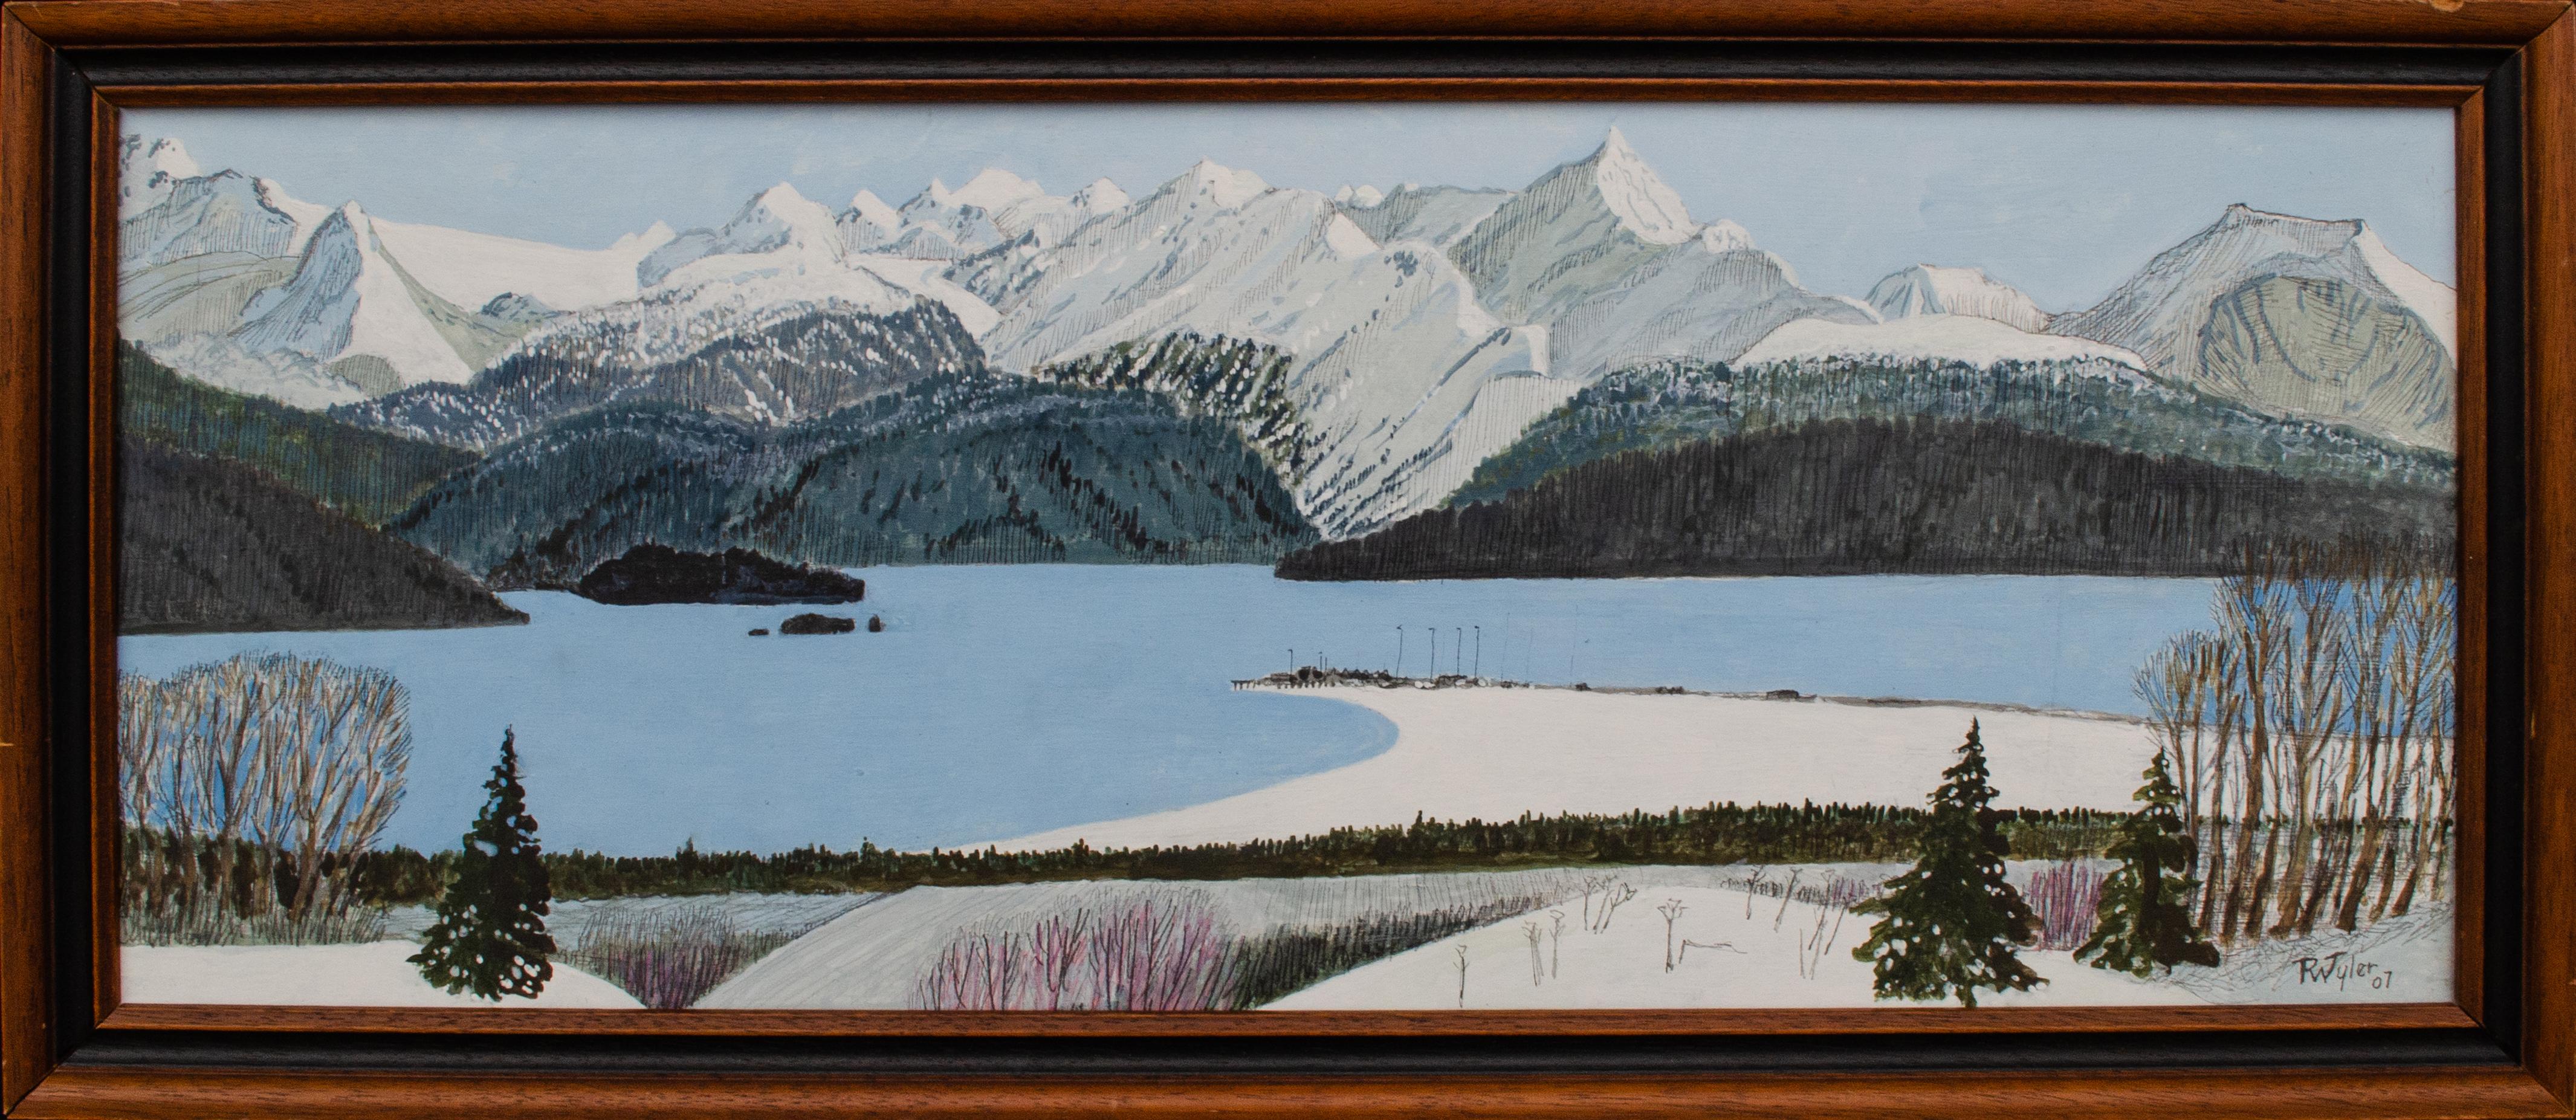 Richard Wilson Tyler Landscape Painting - Kachemak Bay, Alaskan Landscape by R.W. "Toby" Tyler